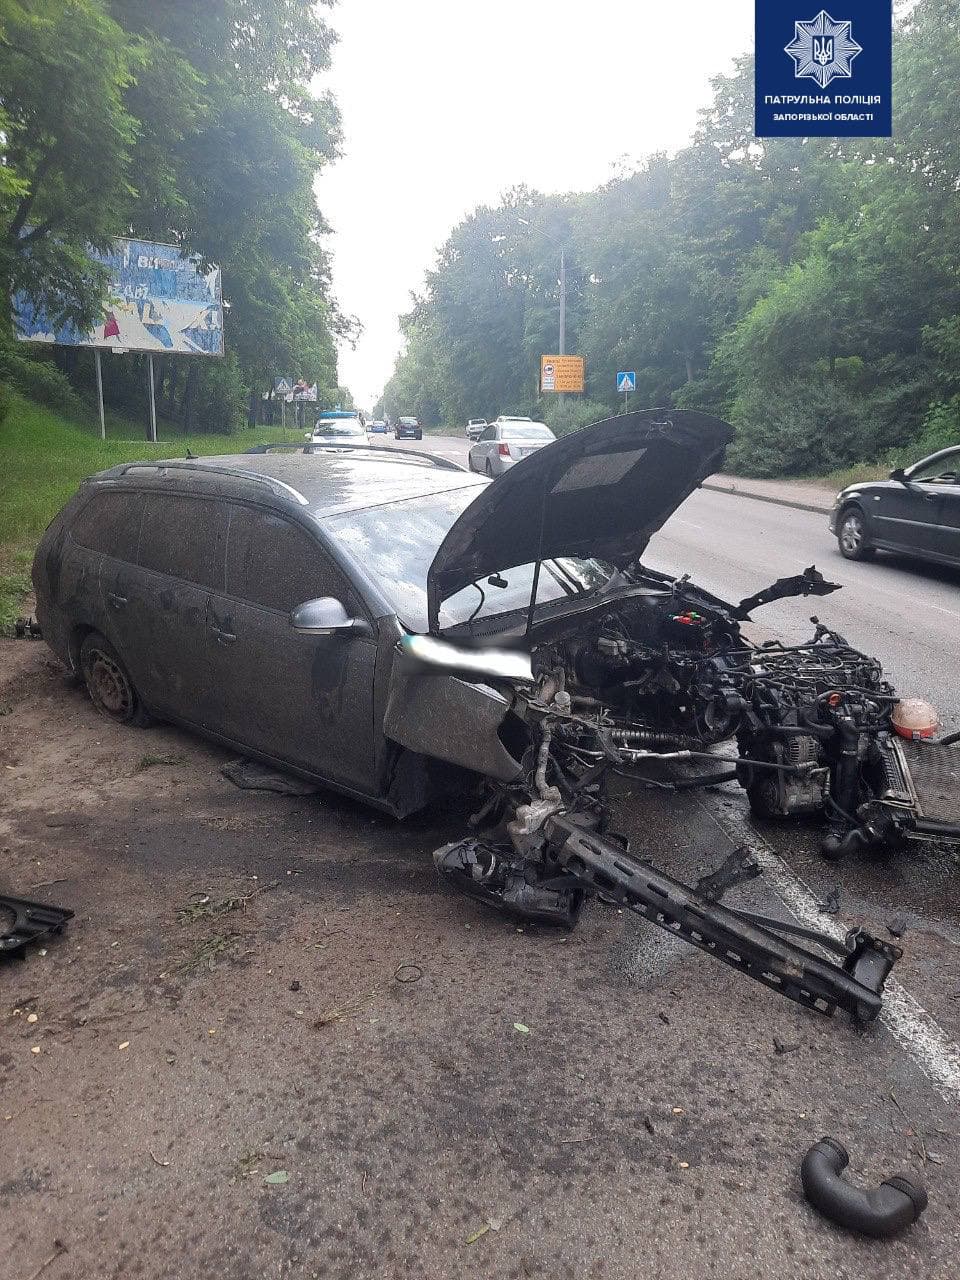 В Запорожье произошло серьезное ДТП: автомобиль от удара разорвало (ФОТО, ВИДЕО)